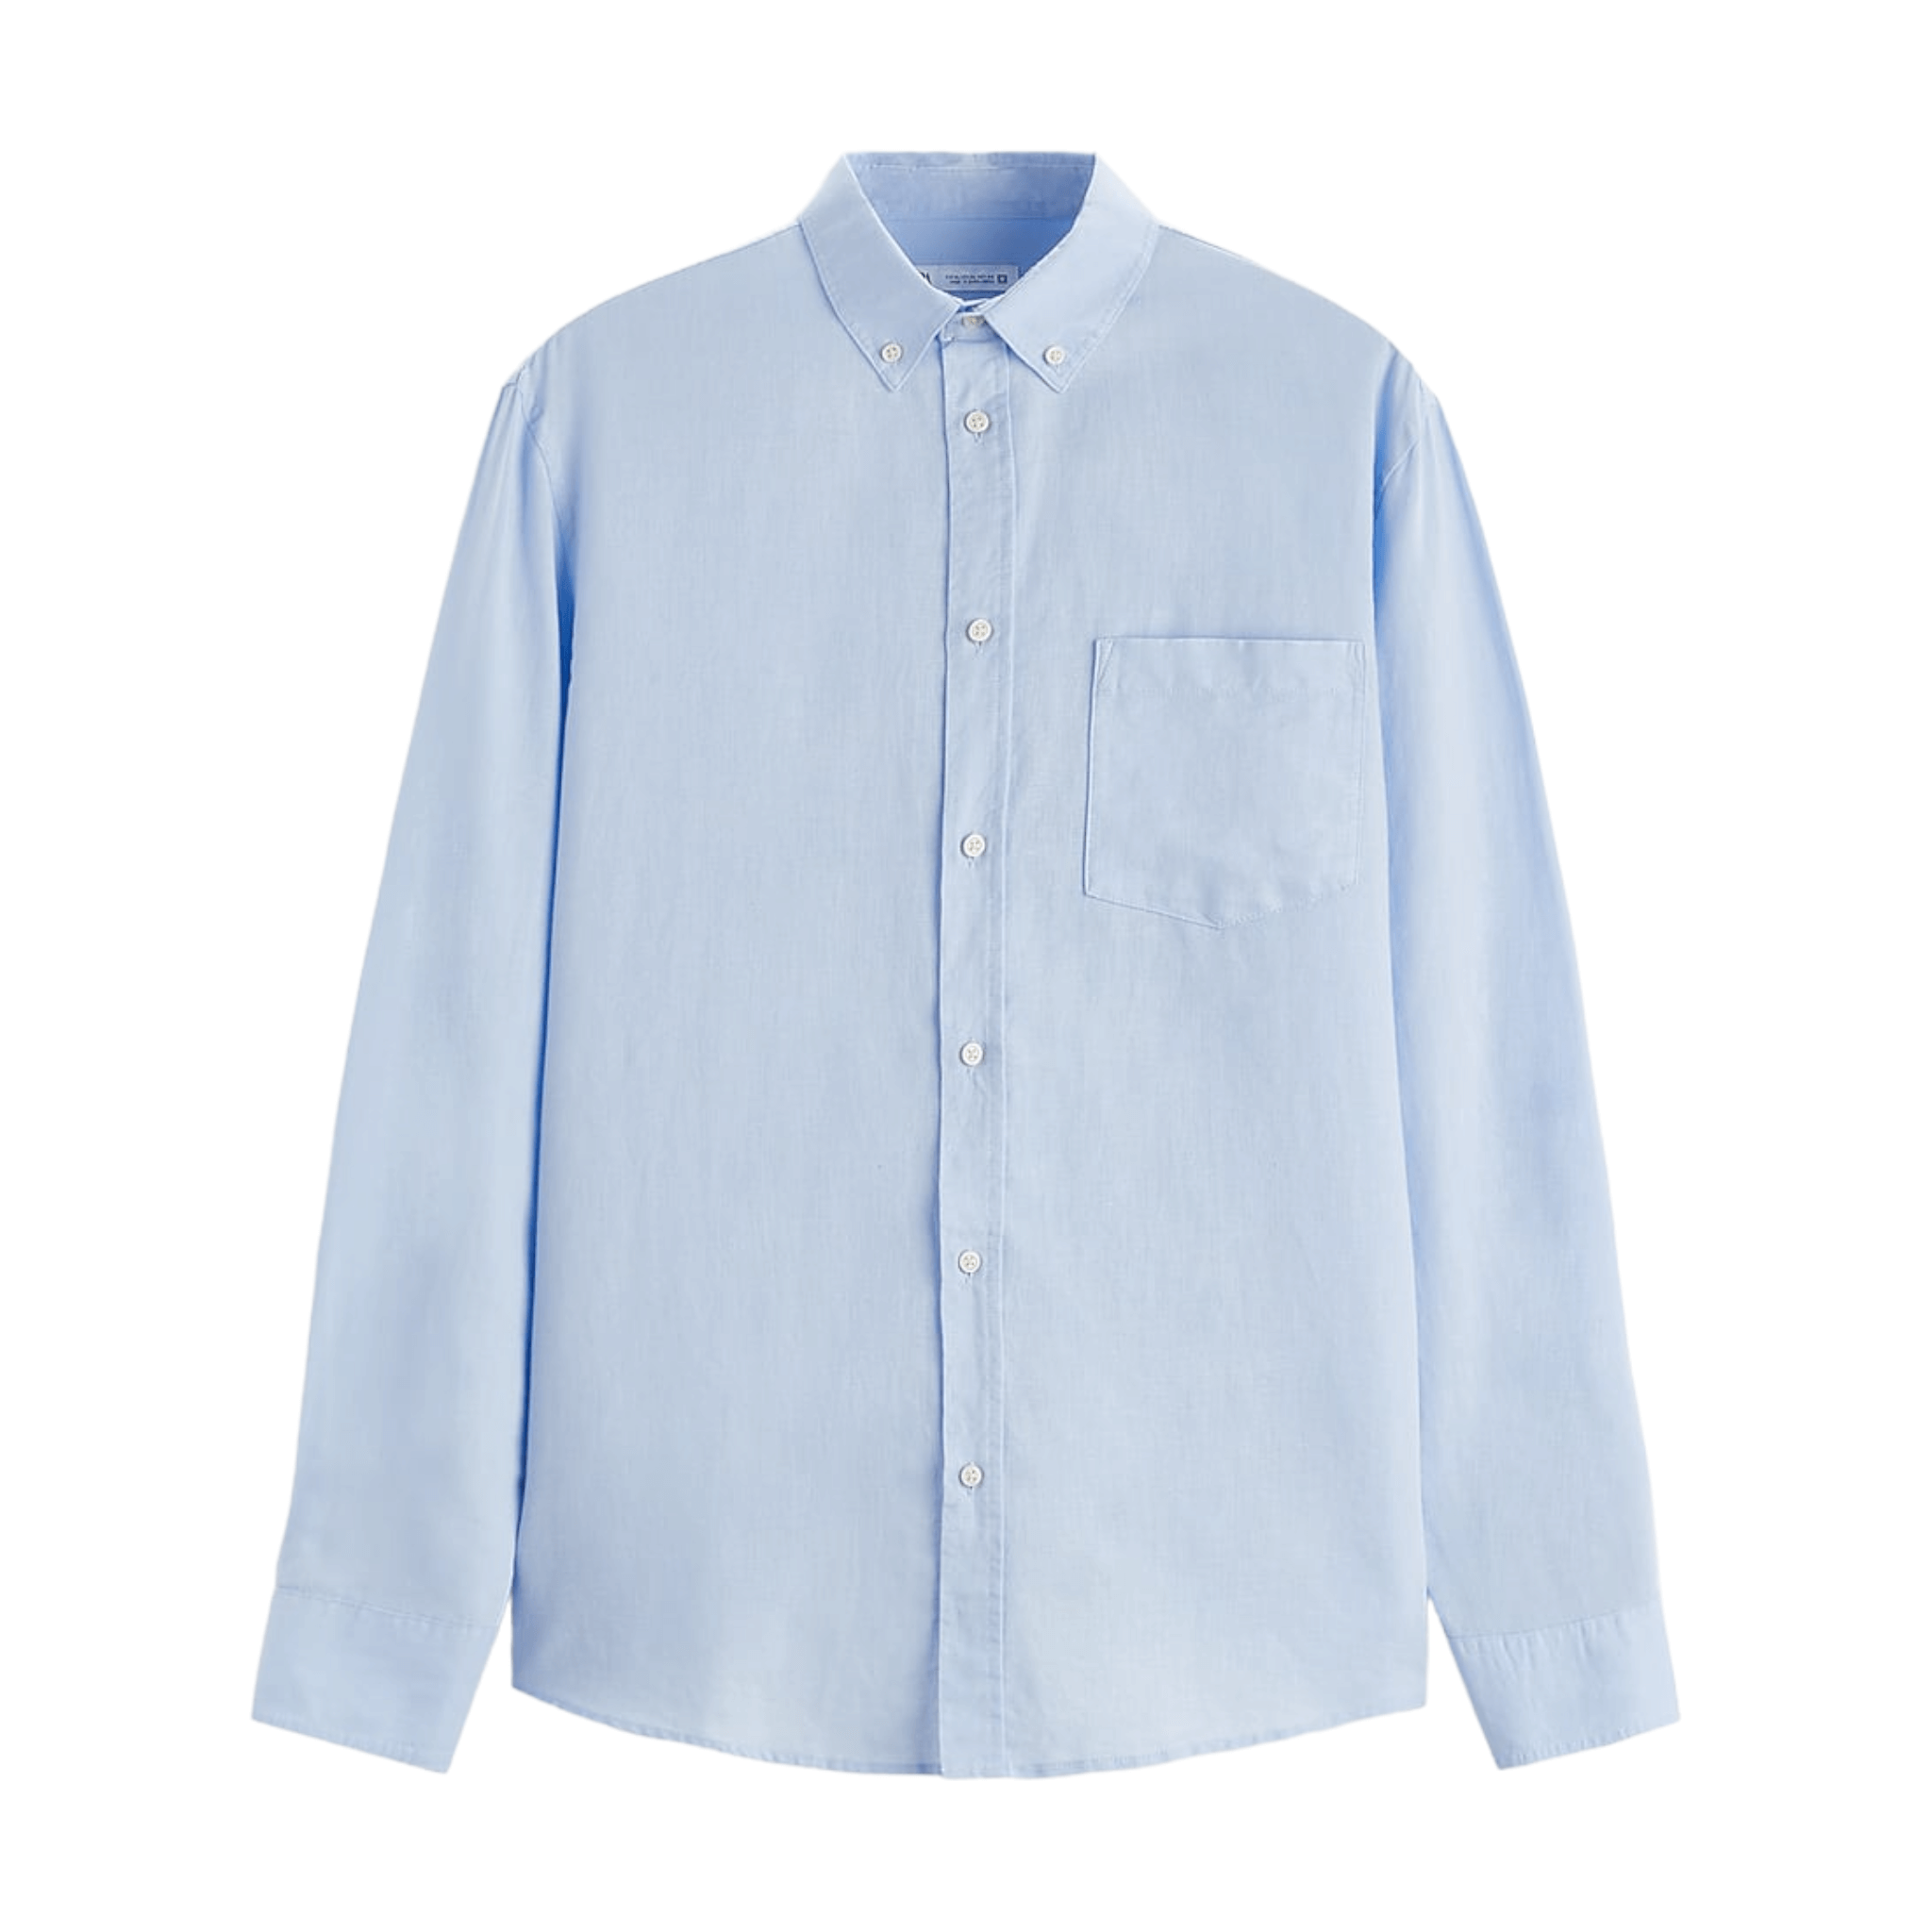 Рубашка Zara Cotton - Linen, голубой рубашка zara linen cotton blend синий